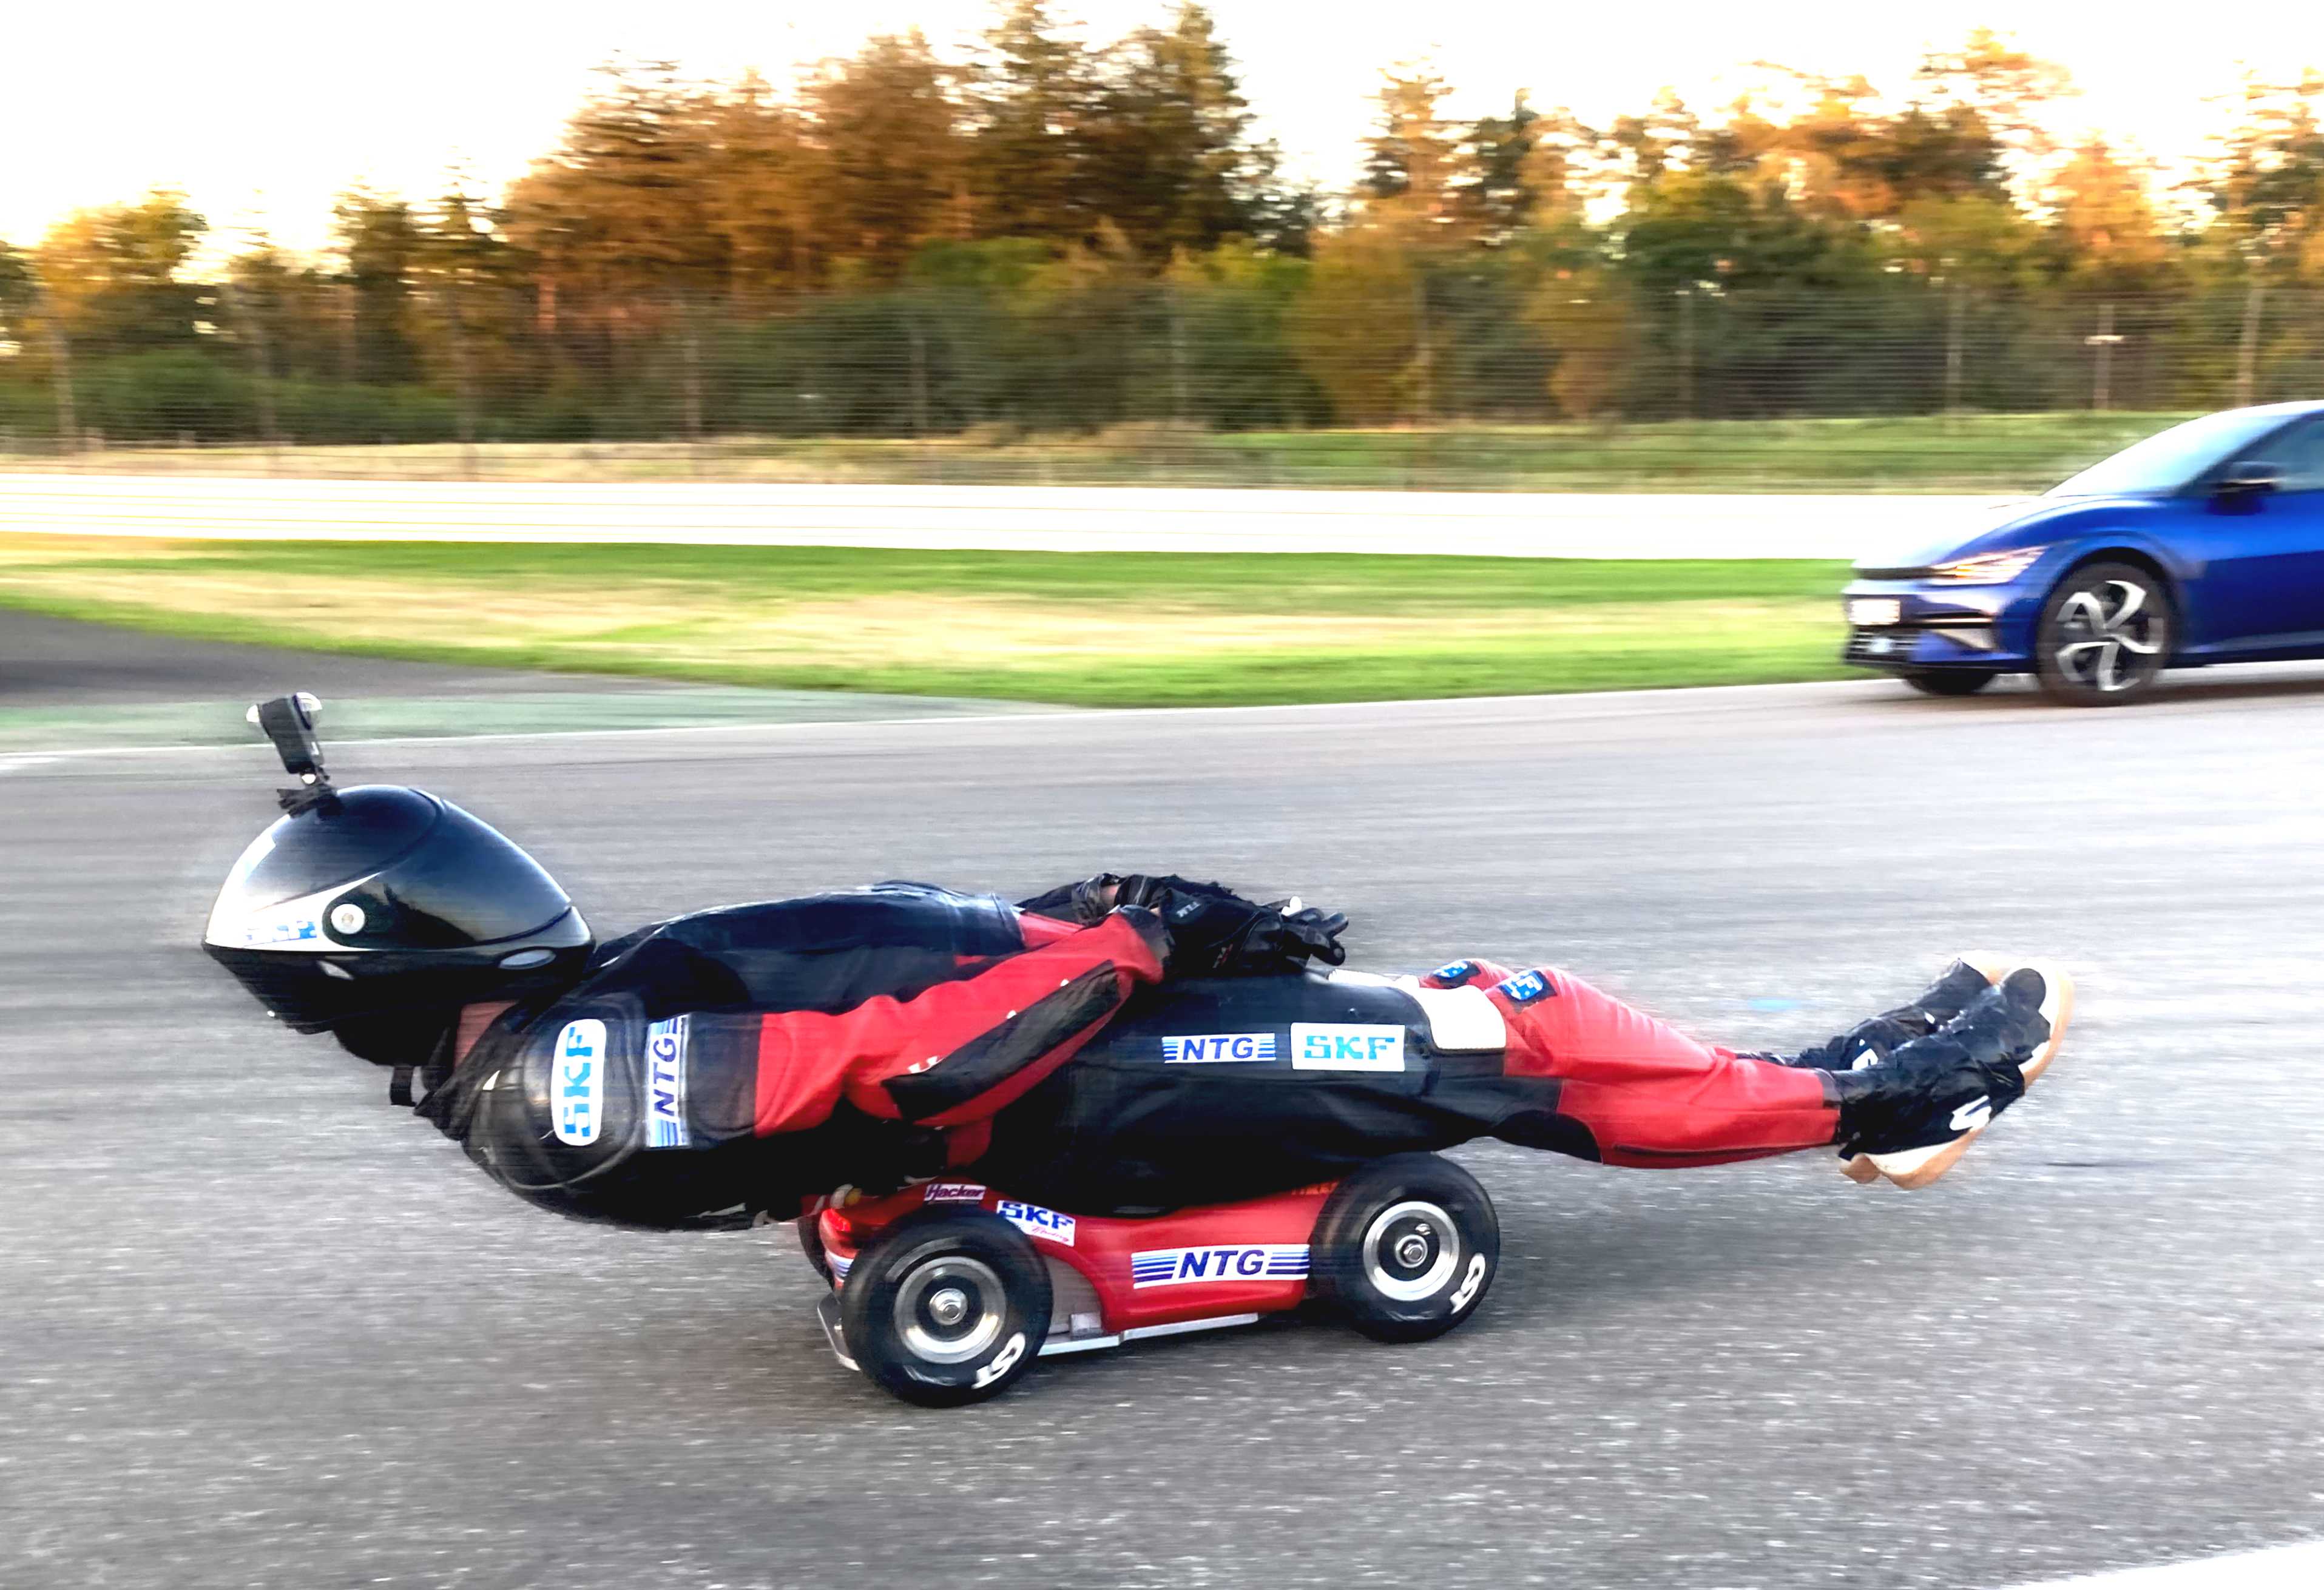 Bobby-Car-Pilot verbessert Geschwindigkeits-Weltrekord – elektrifiziertes  Bobby-Car